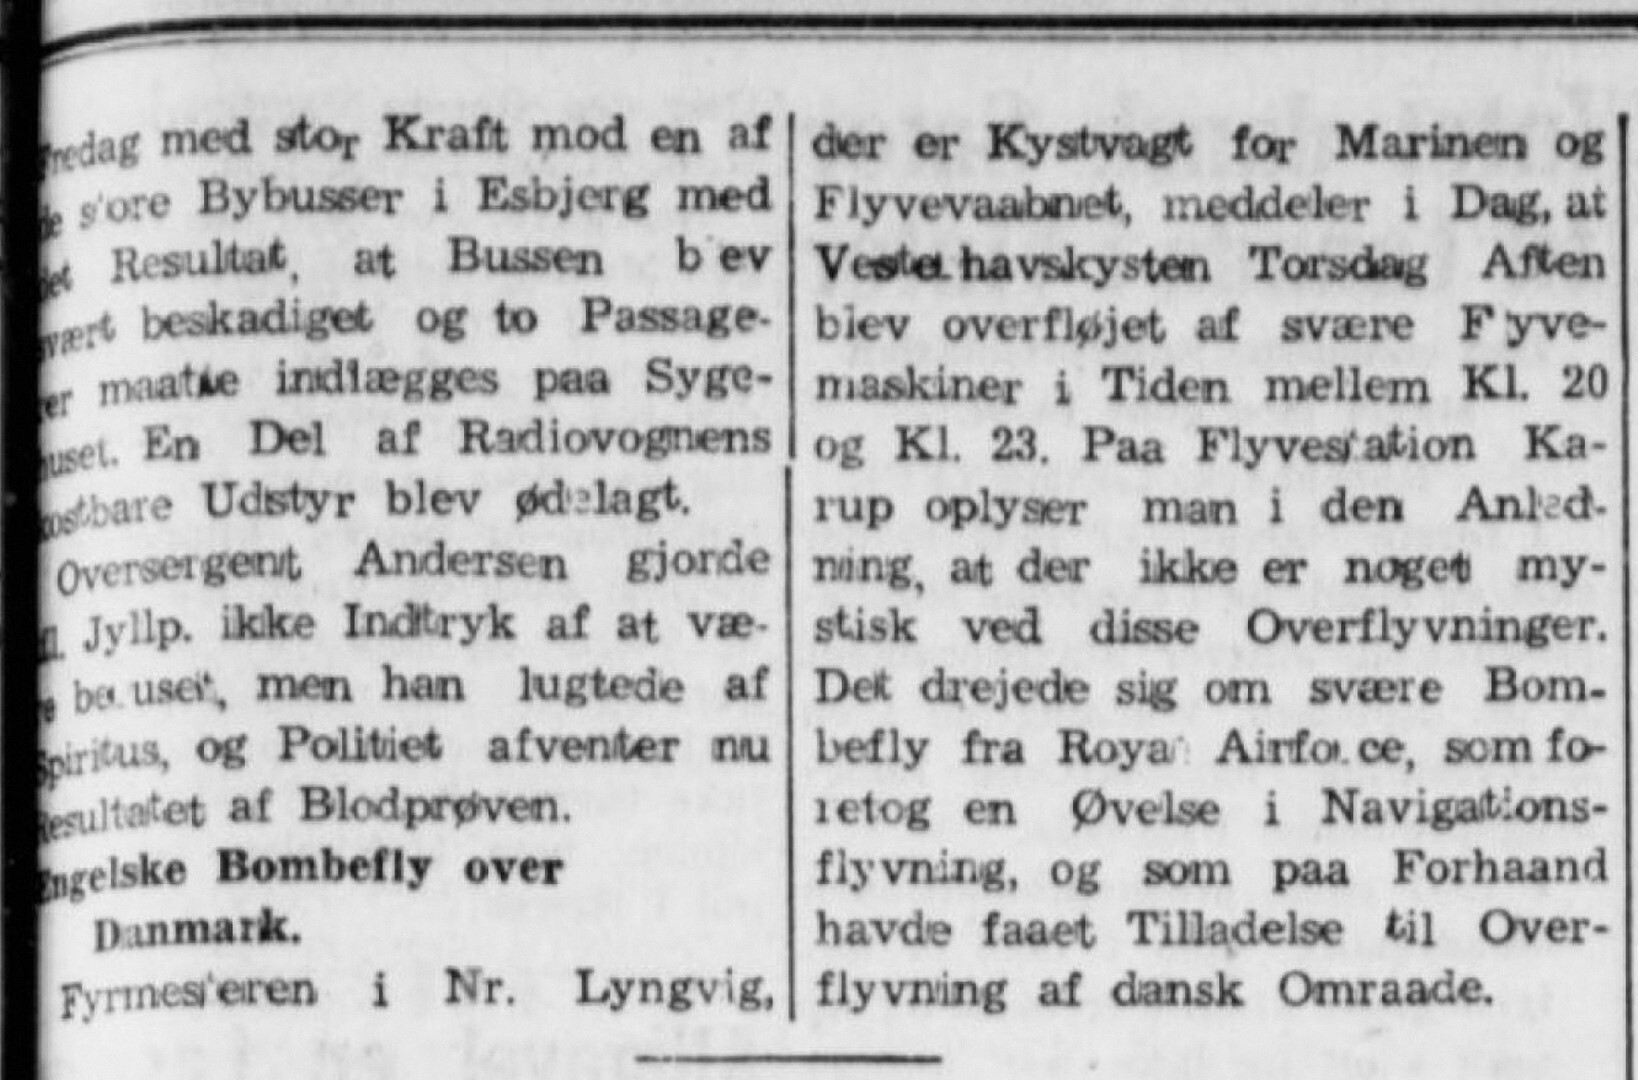 01-holstebro-dagblad-1952-11-15-engelske-bombefly-over-danmark-aendret-storrelse-large